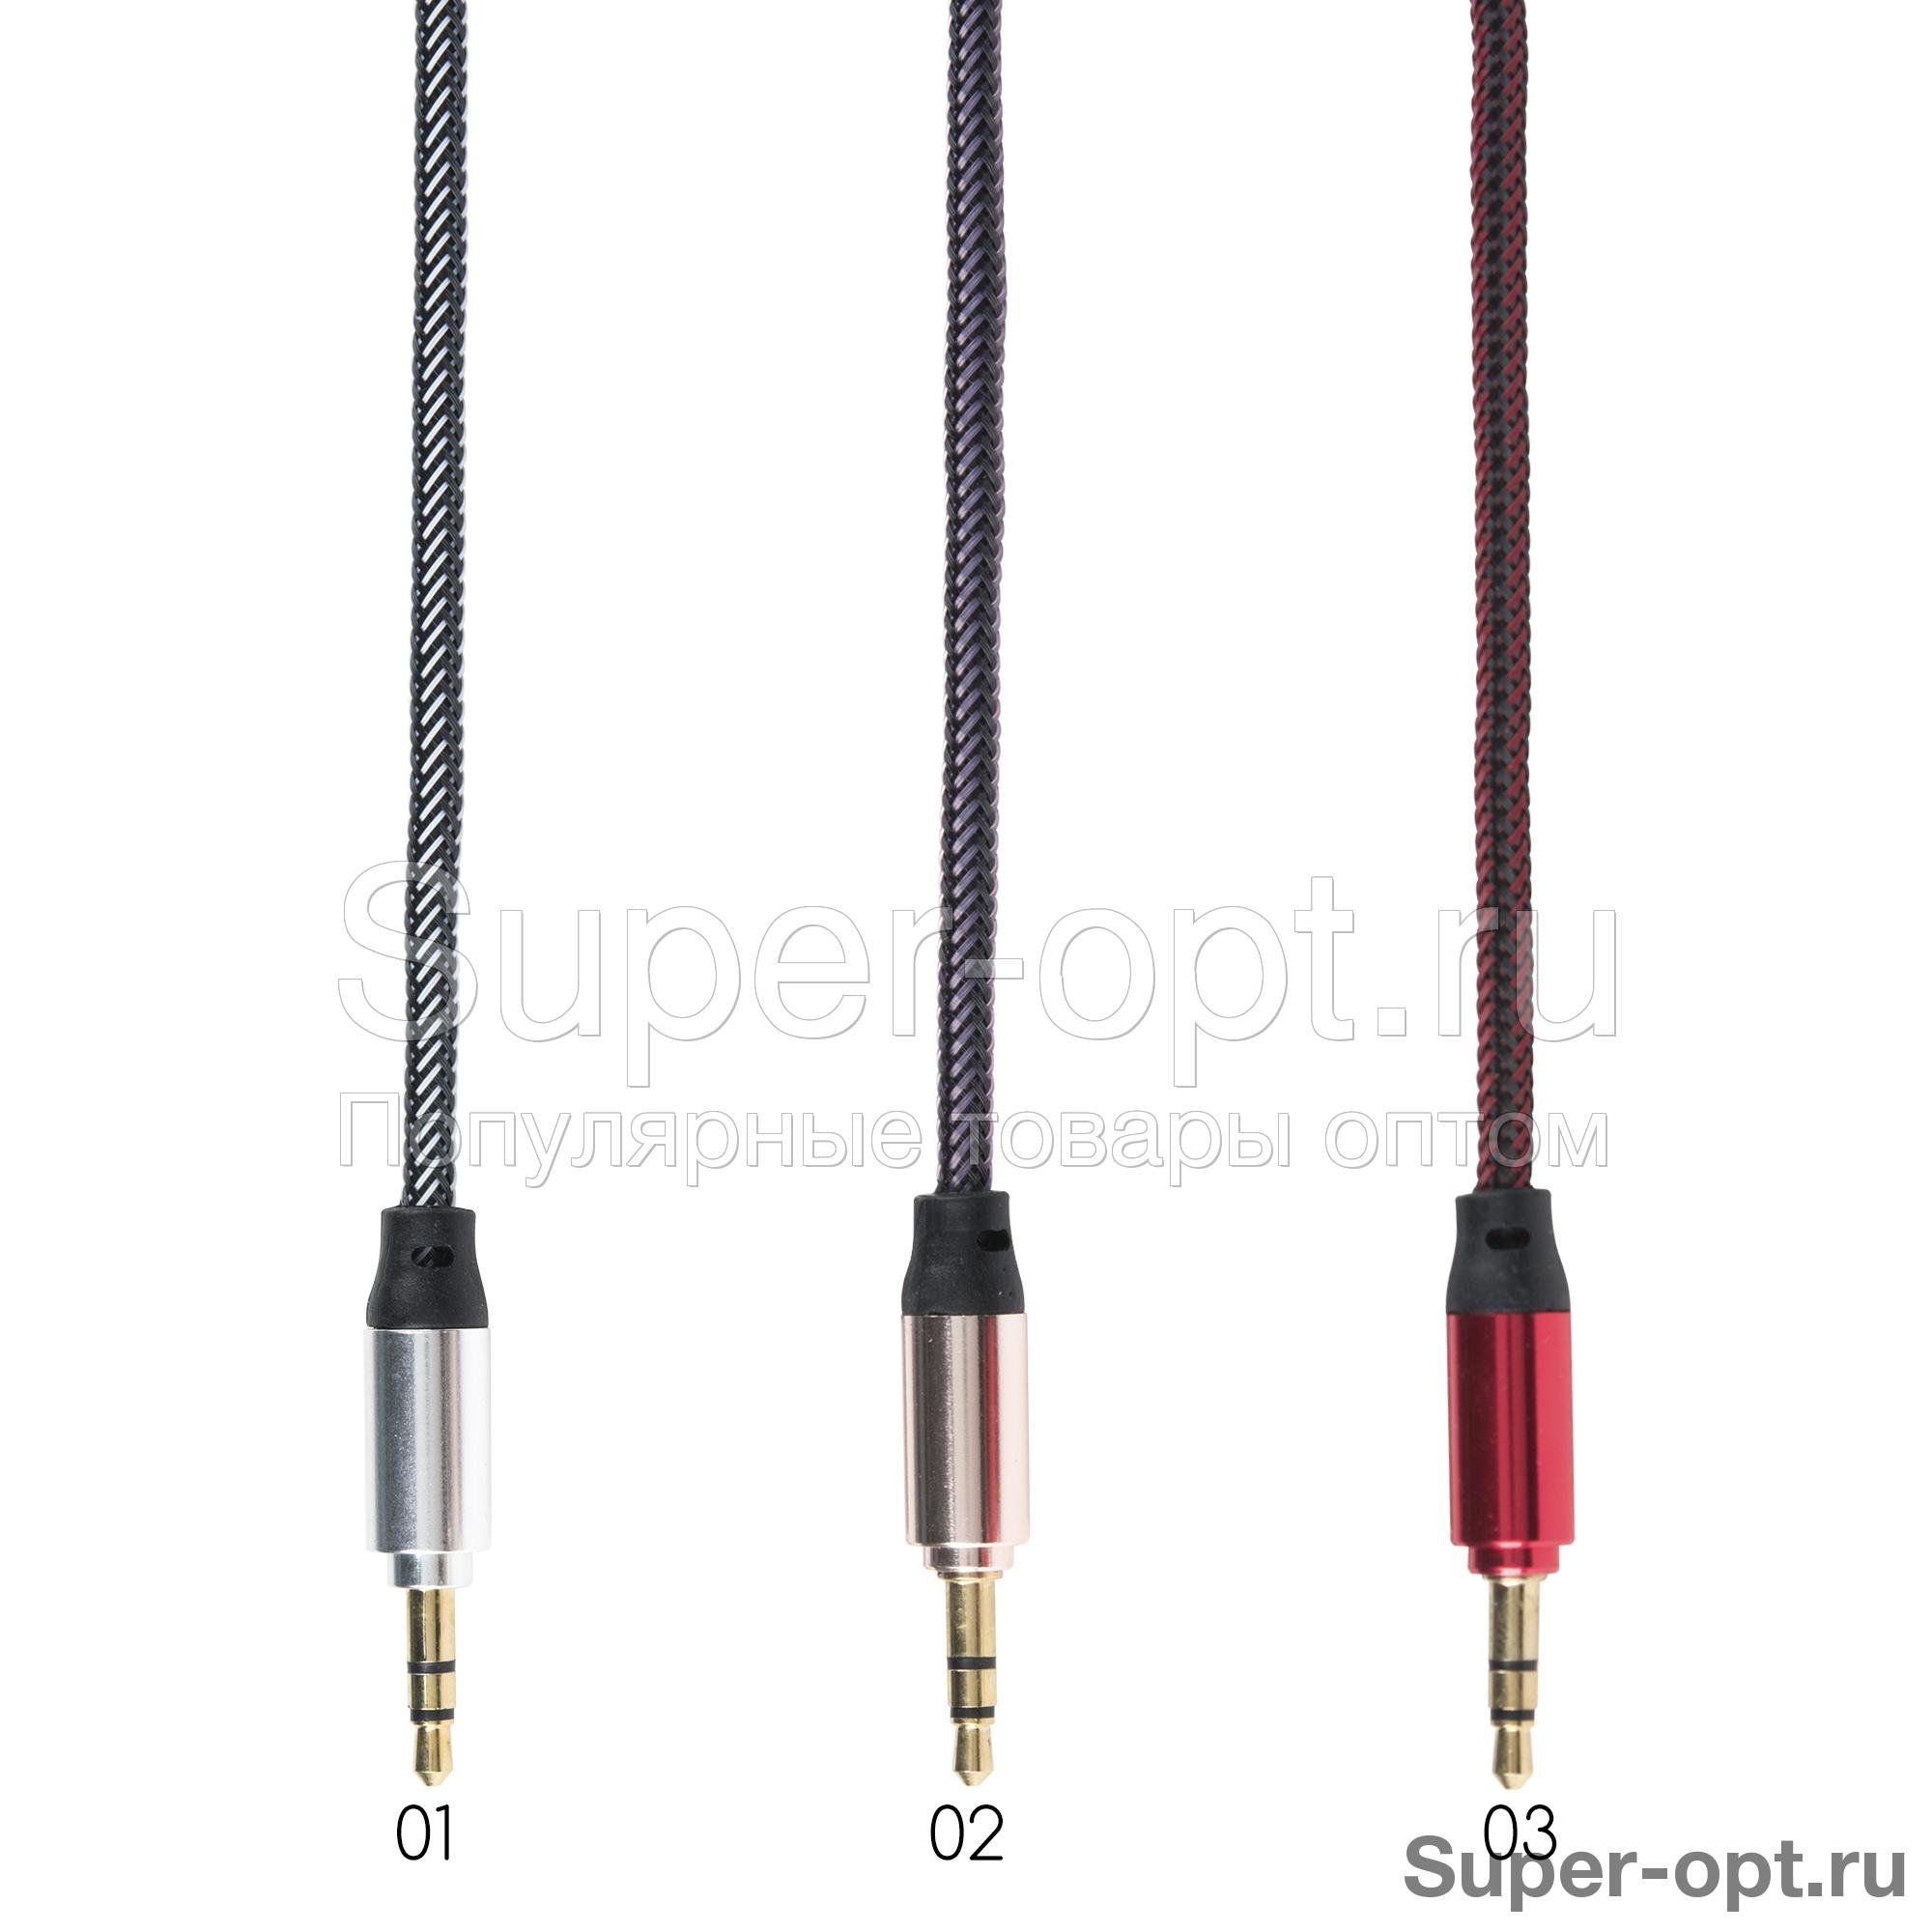 Аудио кабель AUX плетеный 3.5 мм